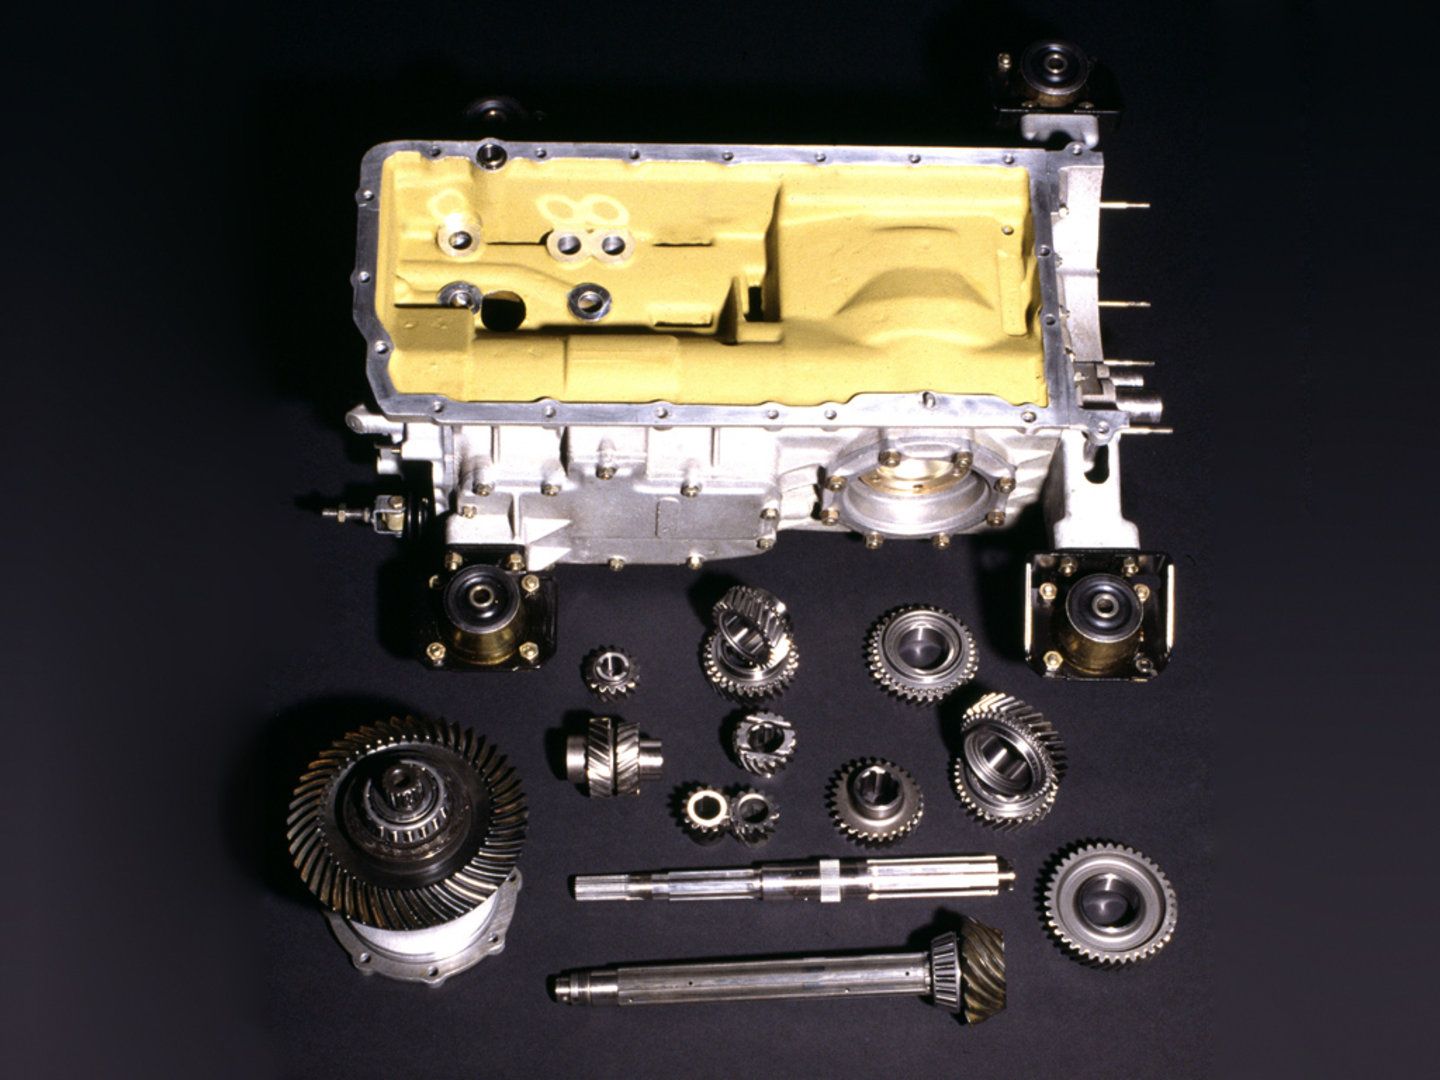 1984 - 1991 Ferrari Testarossa